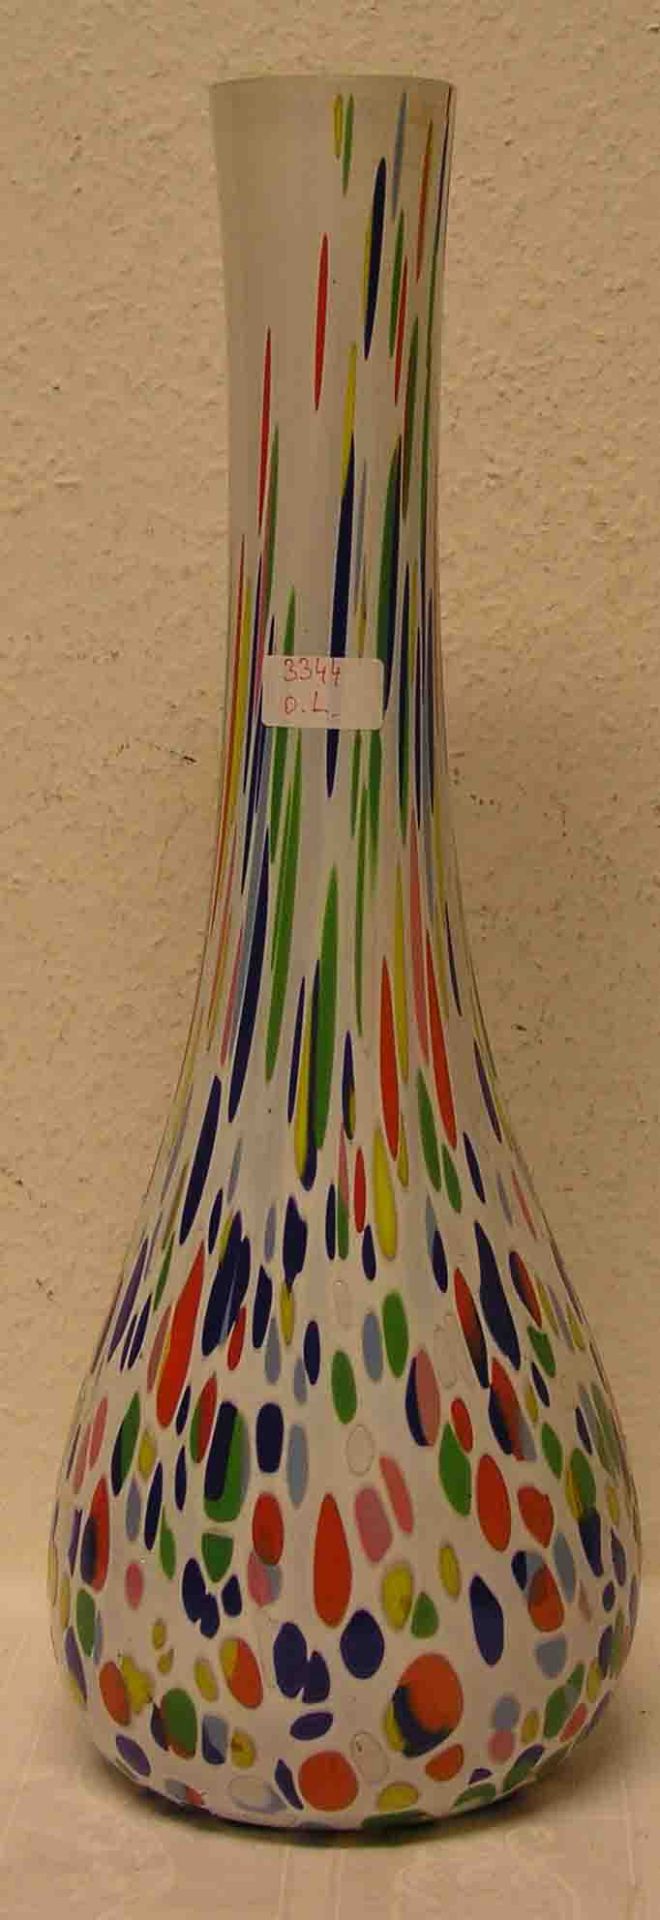 Vase, gebaucht mit langgezogenem Hals, bunt bemalt, Höhe: 54cm.- - -20.17 % buyer's premium on the